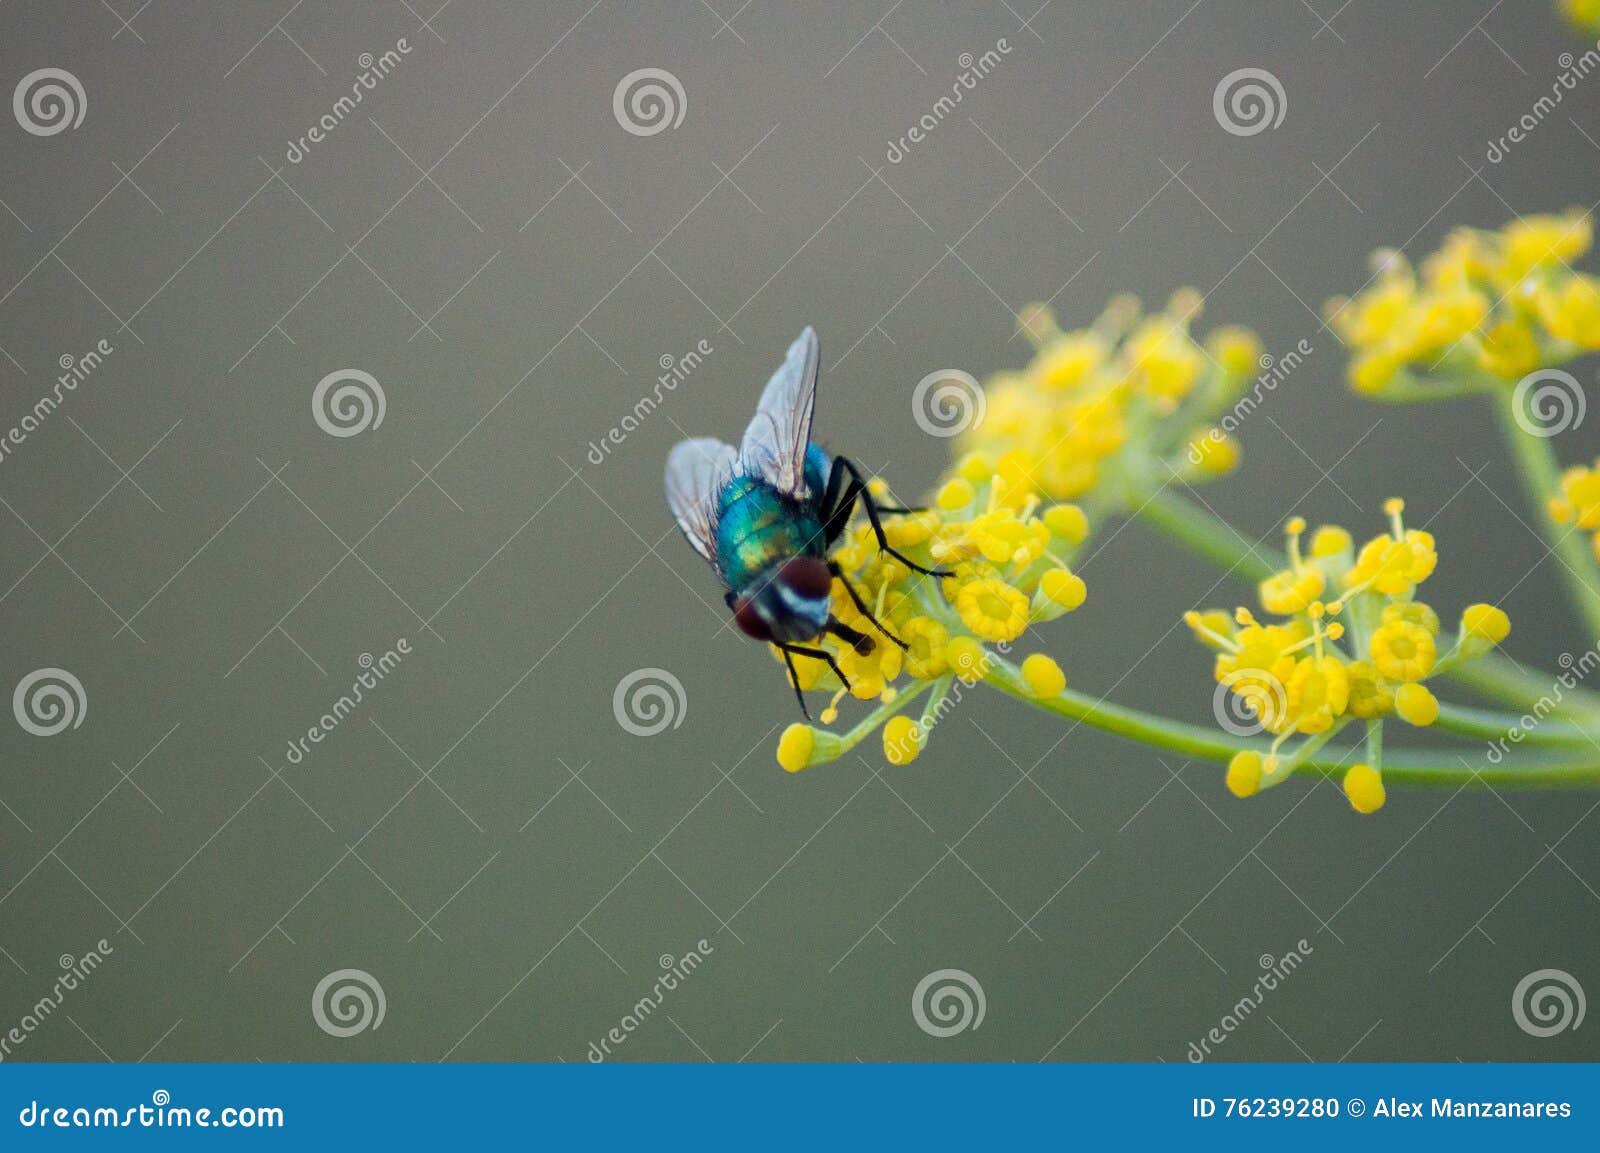 mosca posada en la flor